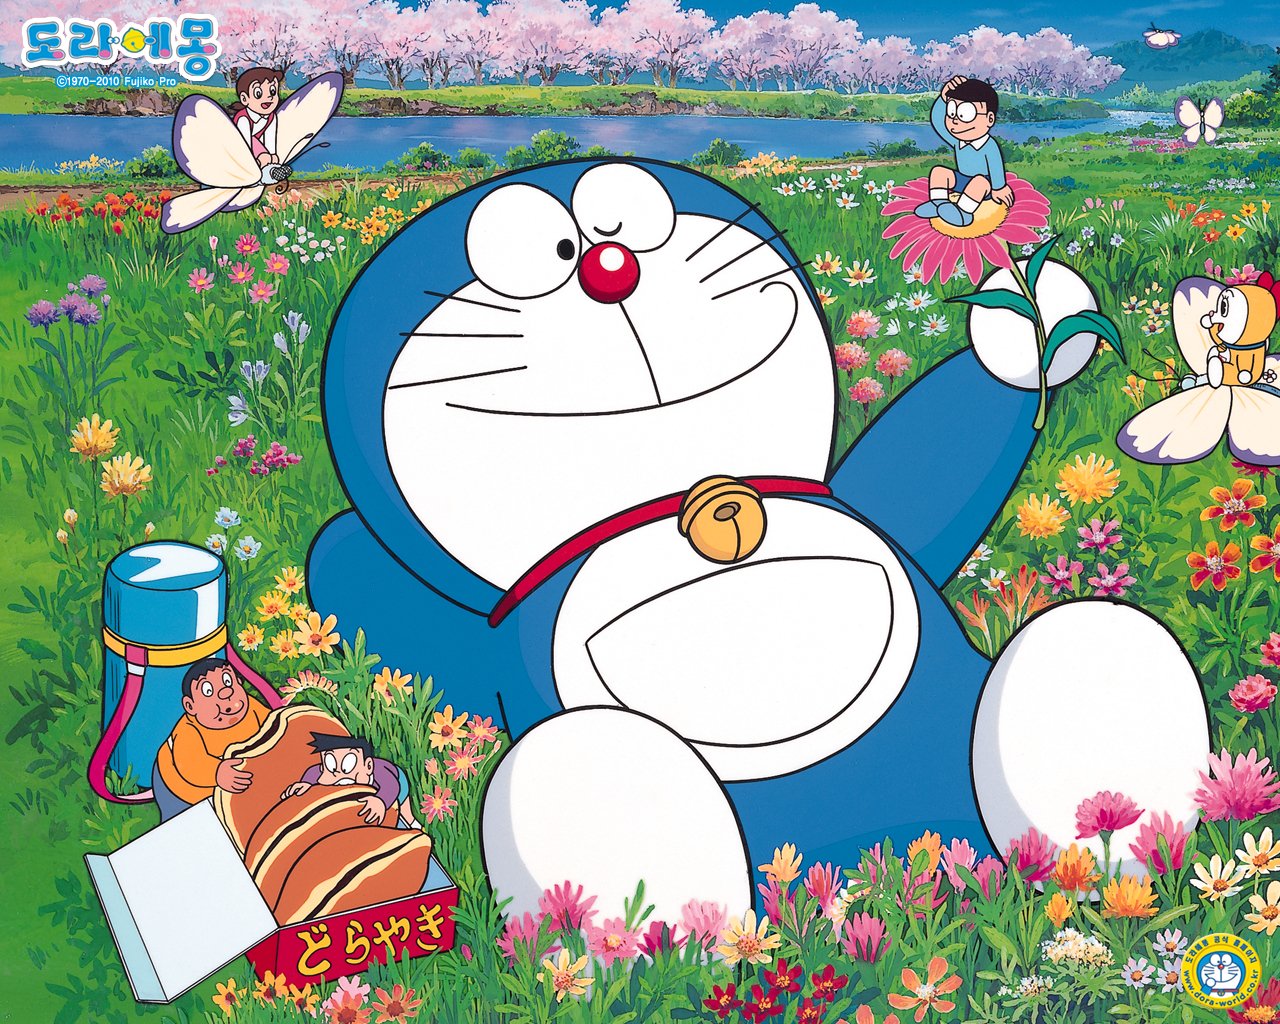 Gambar Wallpaper Doraemon Terbaru | Kampung Wallpaper